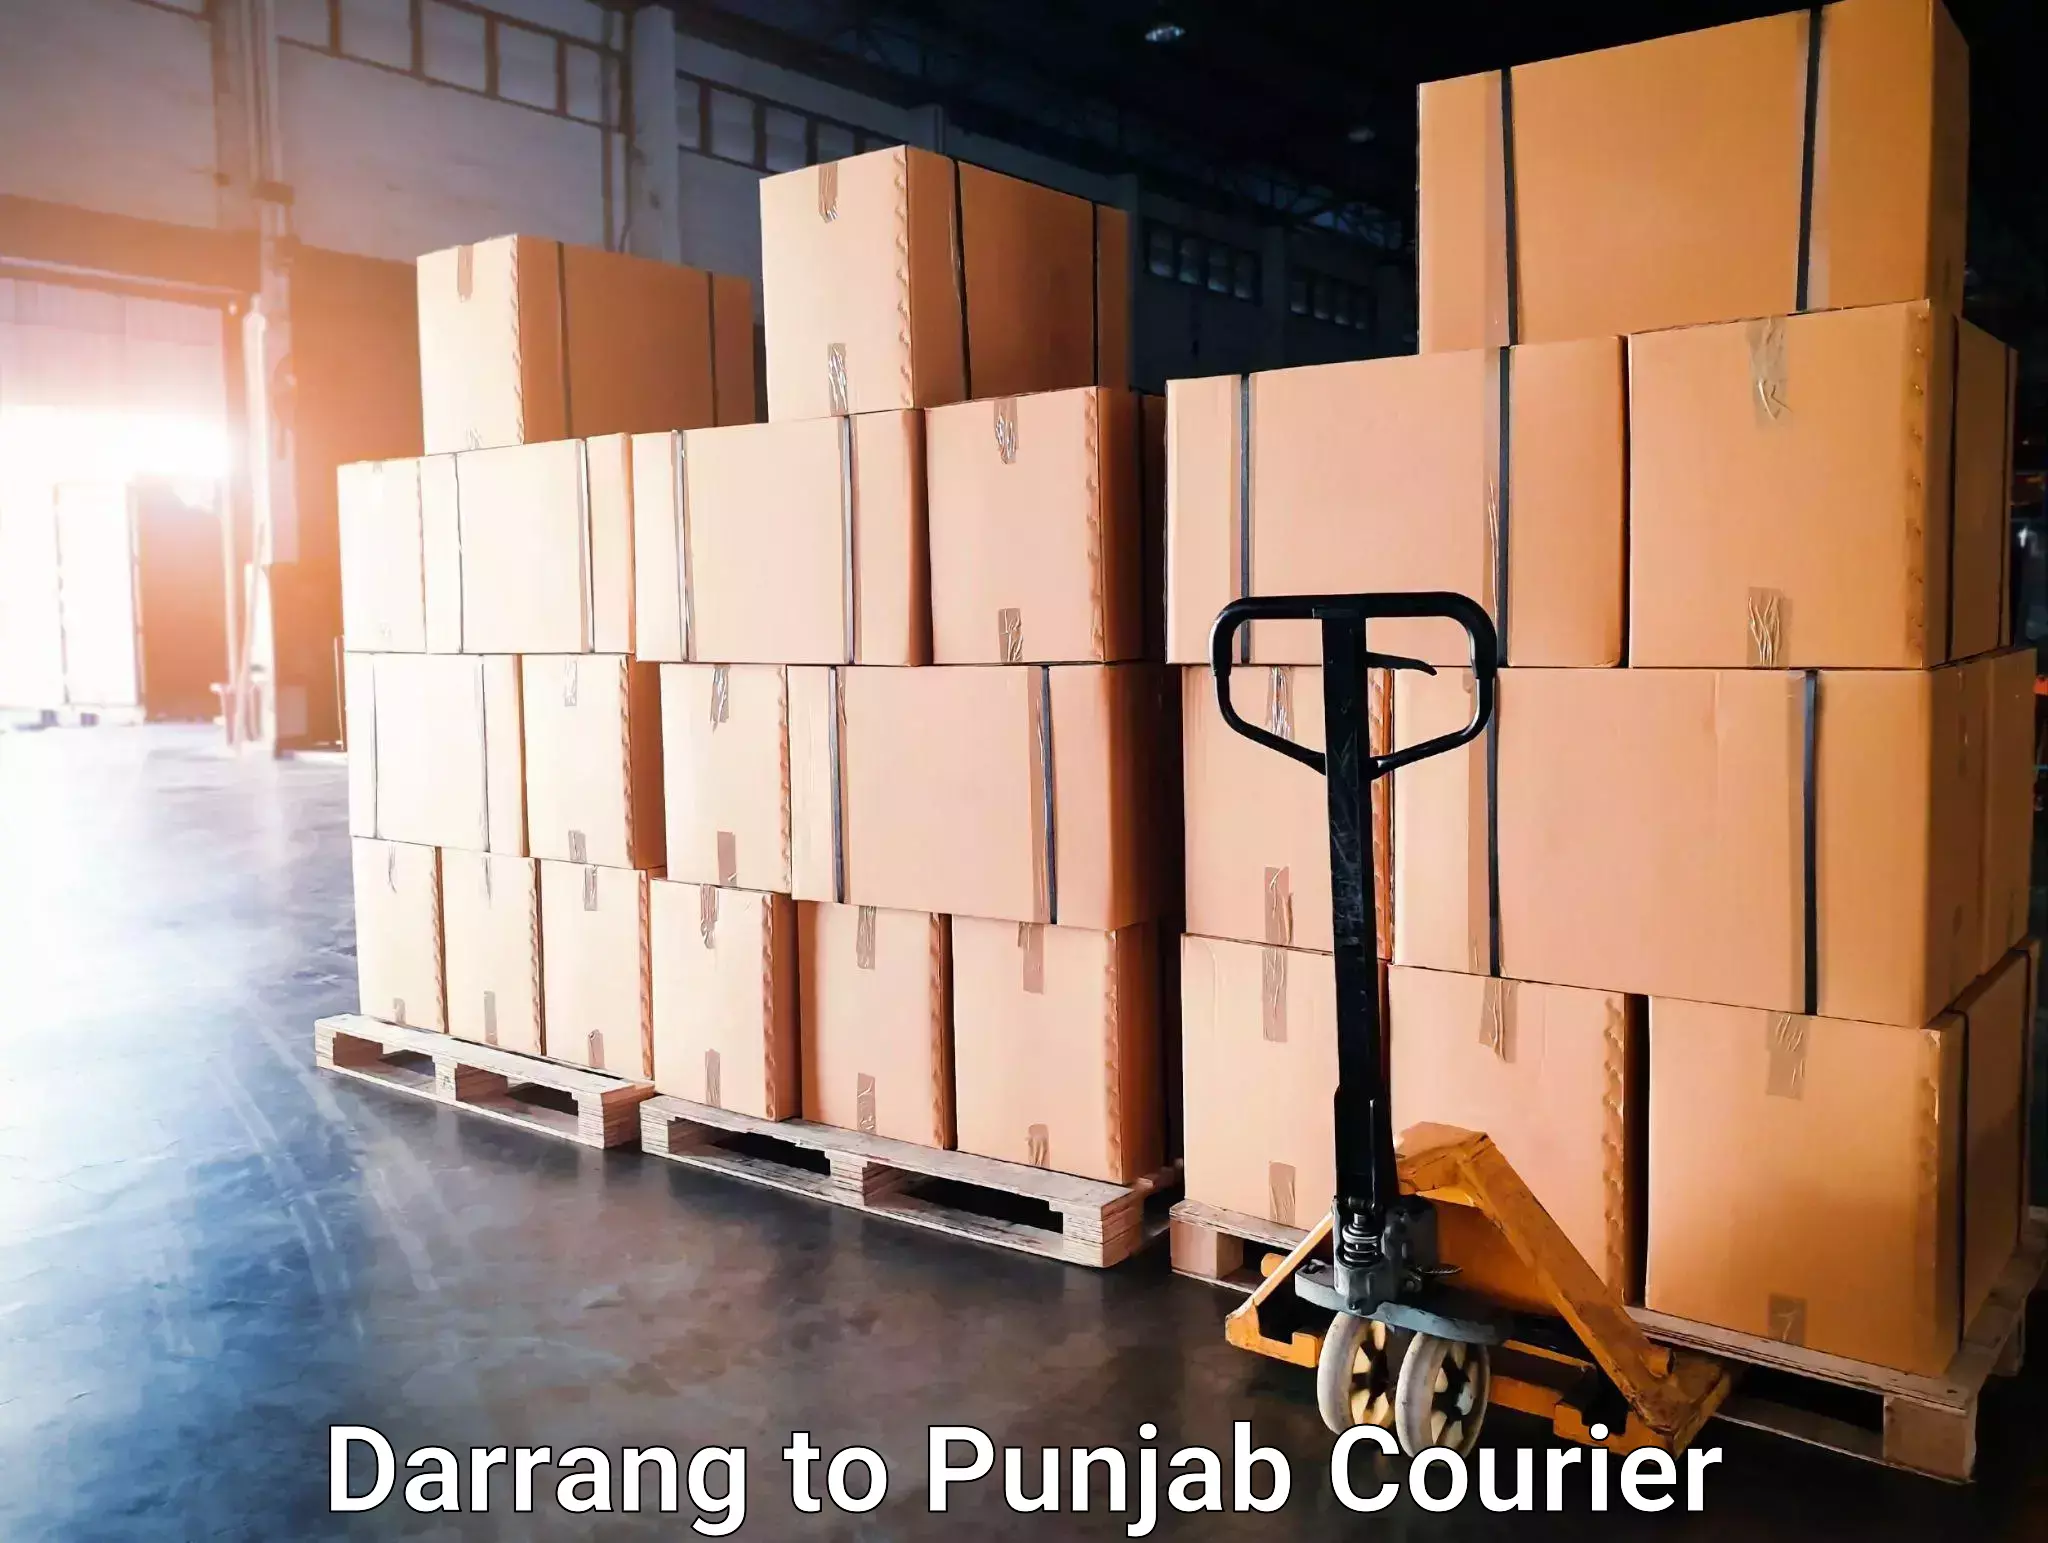 Smart logistics solutions Darrang to Goindwal Sahib